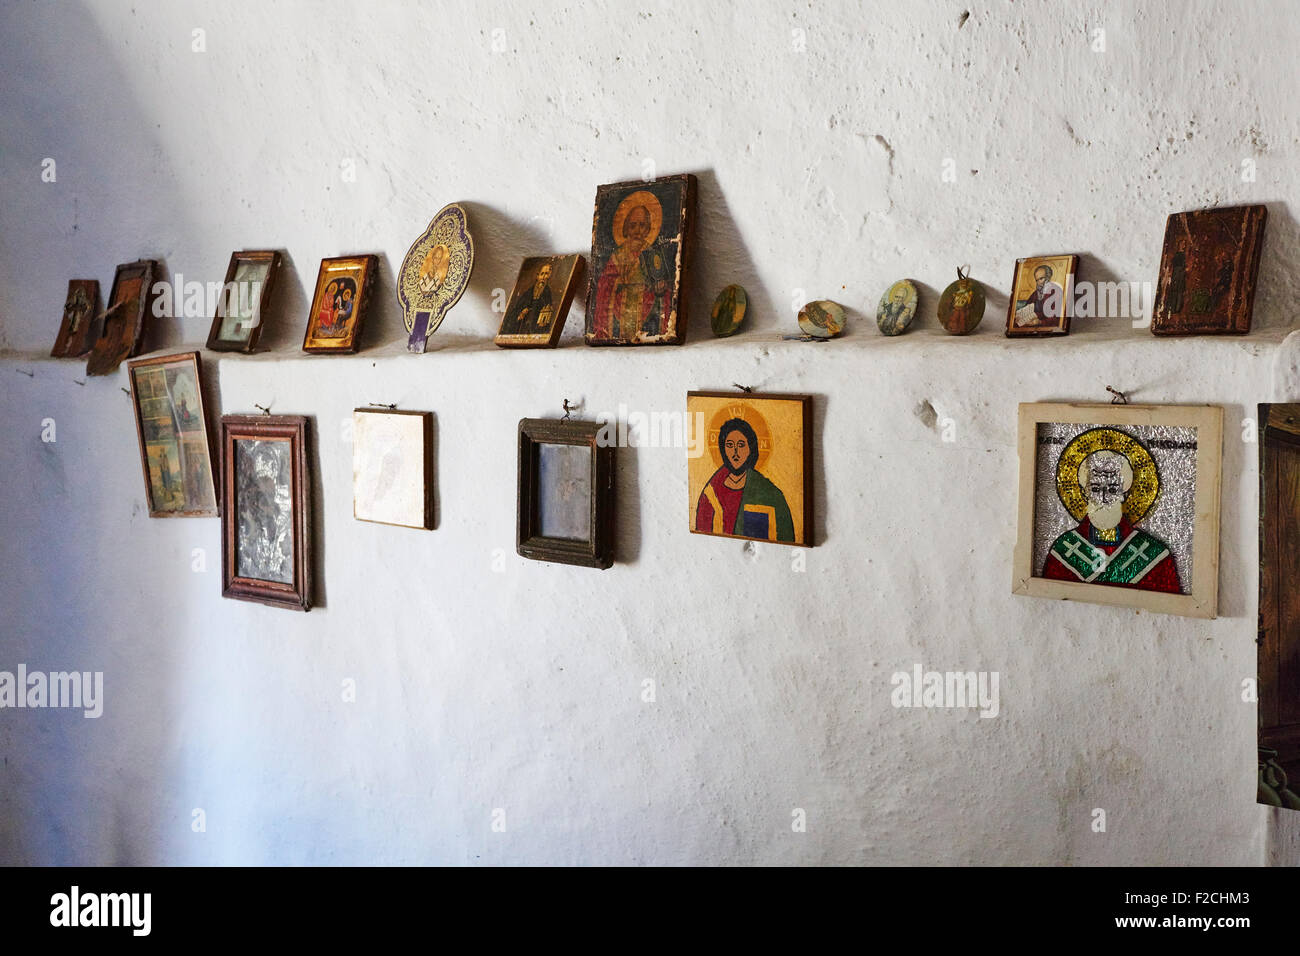 Symbole an der Wand in einer traditionellen griechischen Kirche, Ikaria, Griechenland. Stockfoto